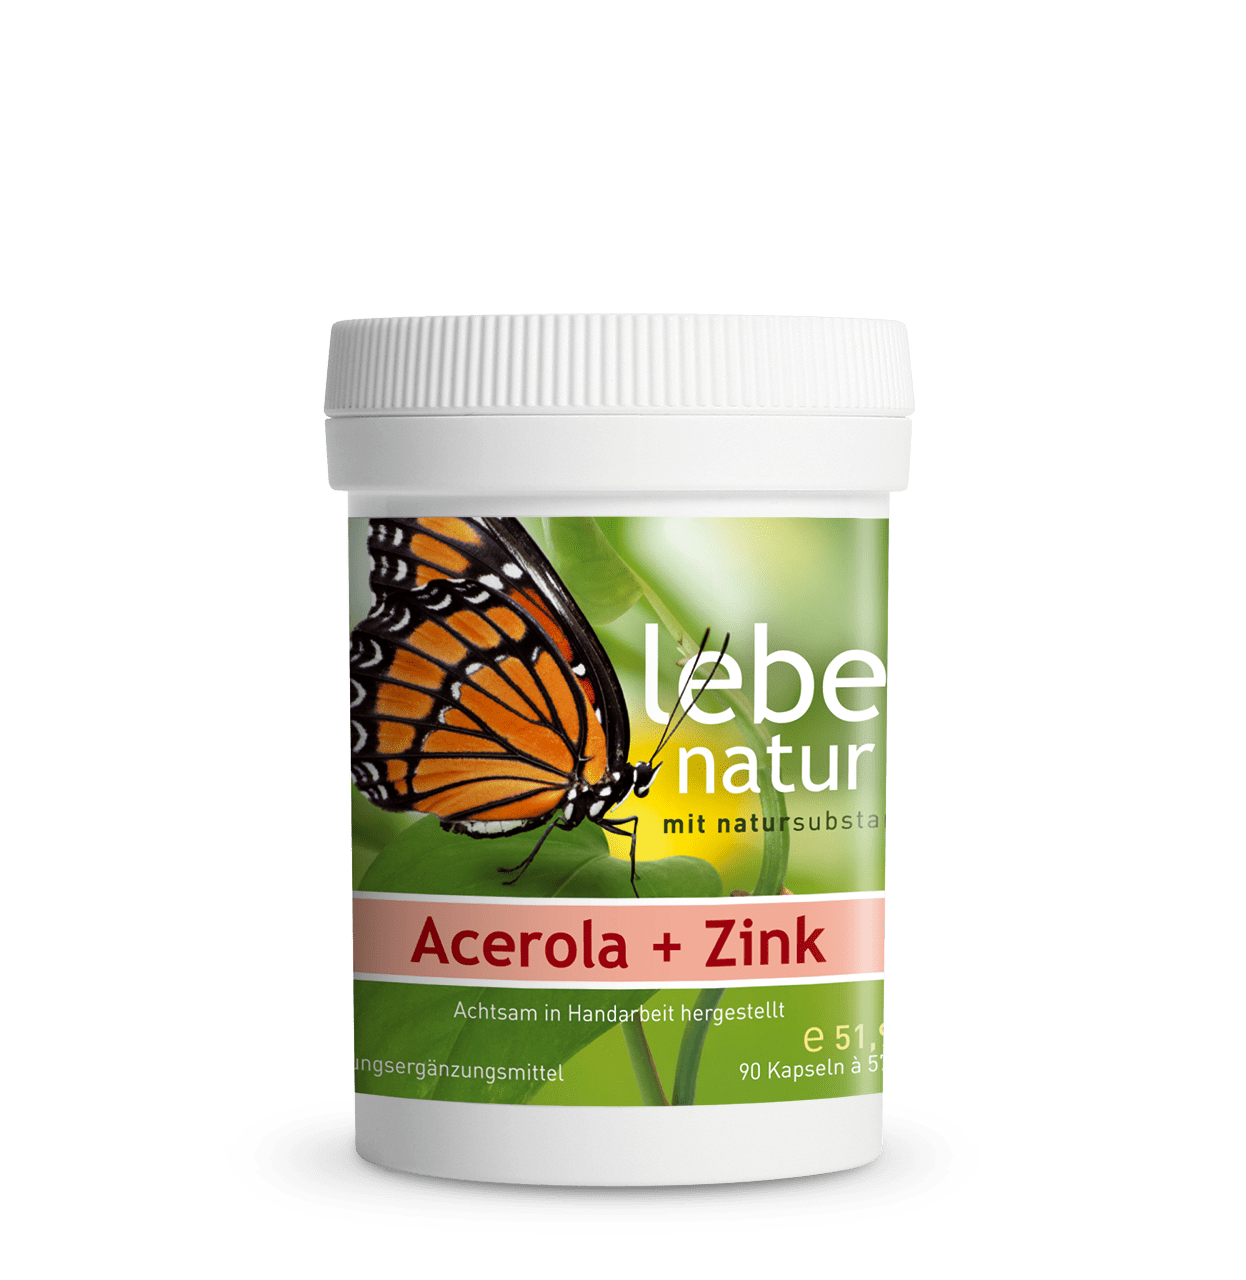 Acerola + Zink - DOSE 90 KAPSEL à 577 mg